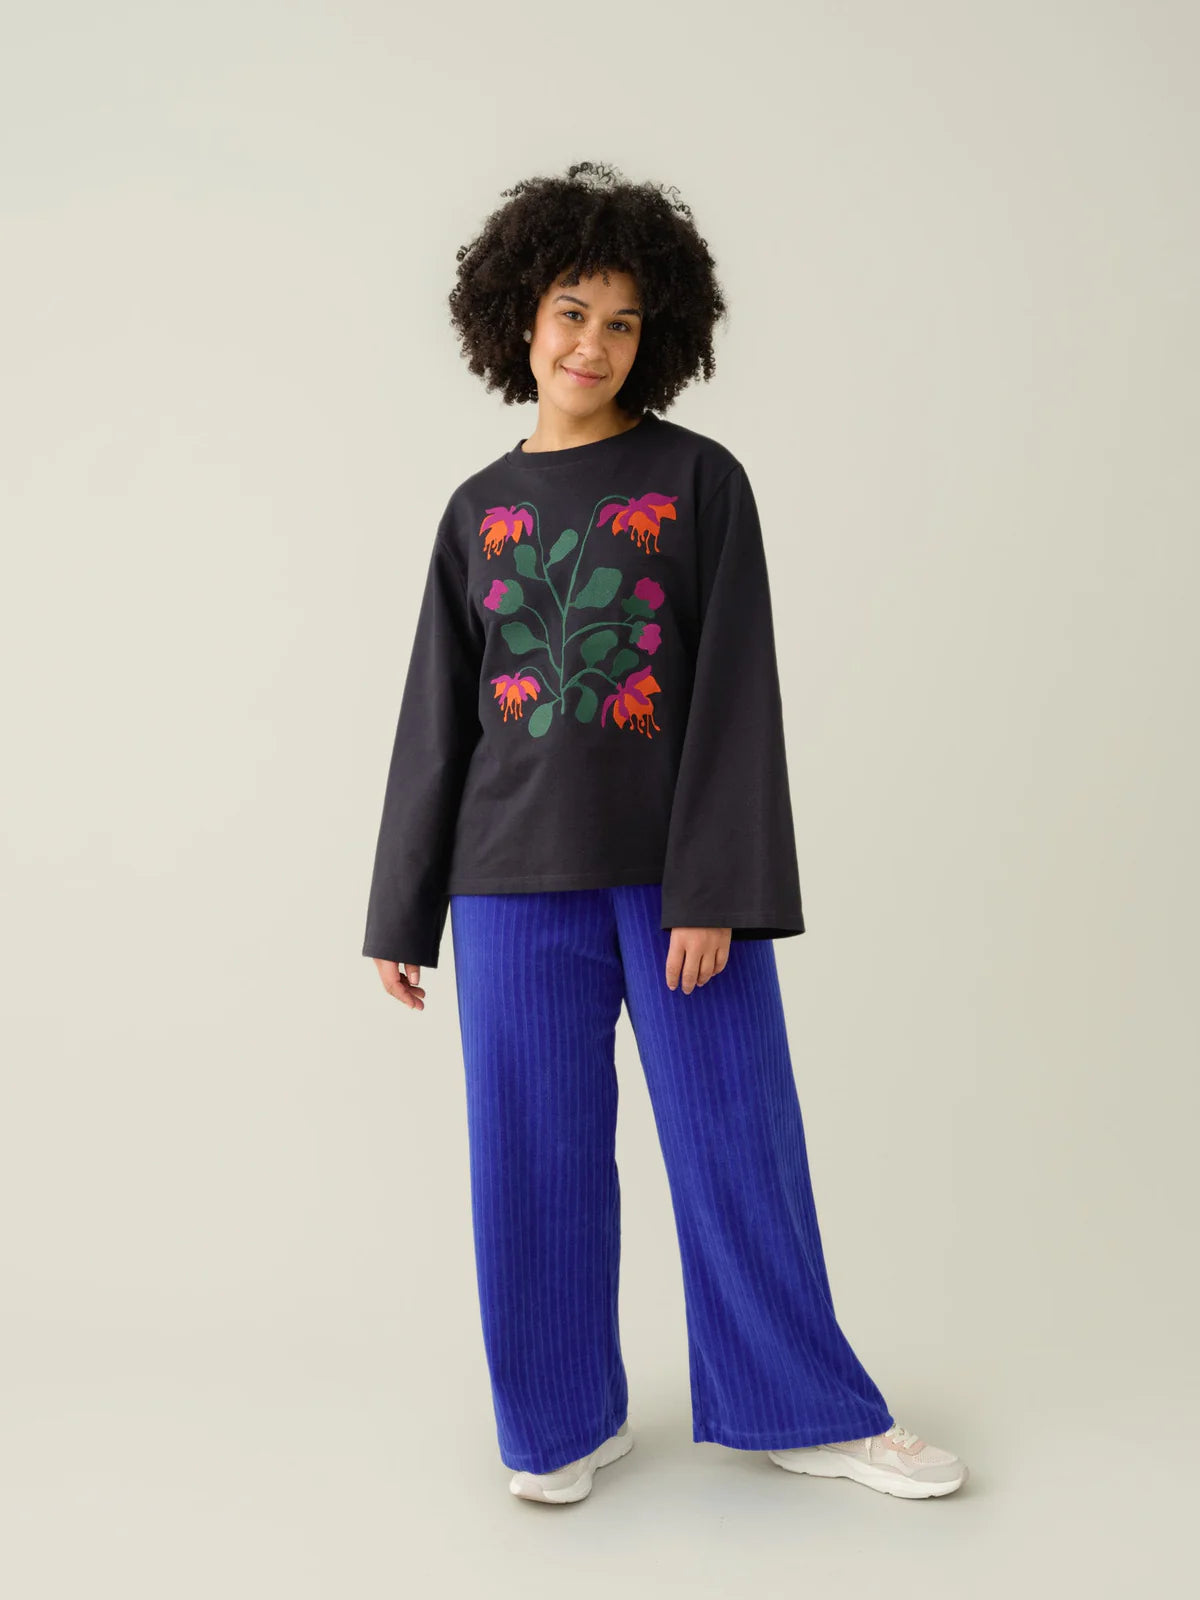 Adults Botania Embroidery Sweatshirt SIZE XS